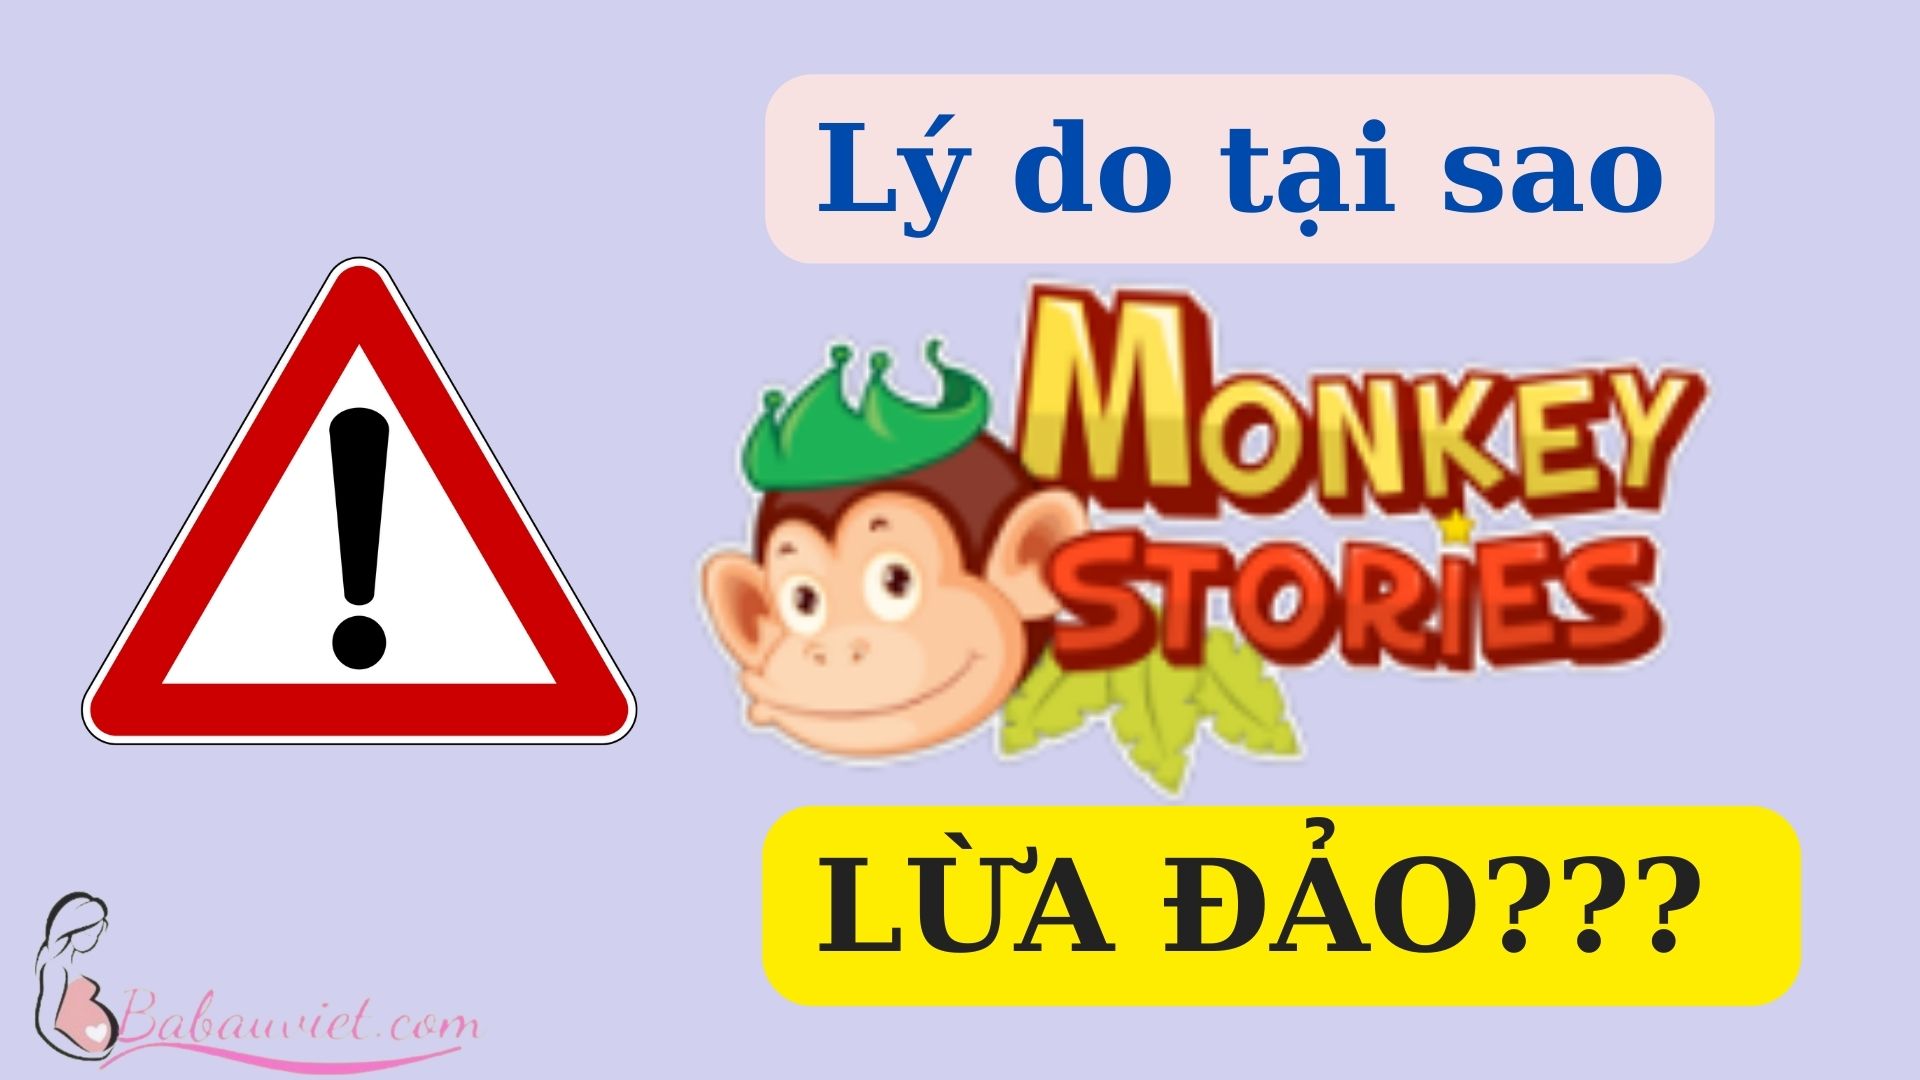 Lý do tại sao lại có thông tin Monkey Stories LỪA ĐẢO thì hãy cùng xem phần "VÉN MÀN SỰ THẬT" phía dưới để rõ hơn!